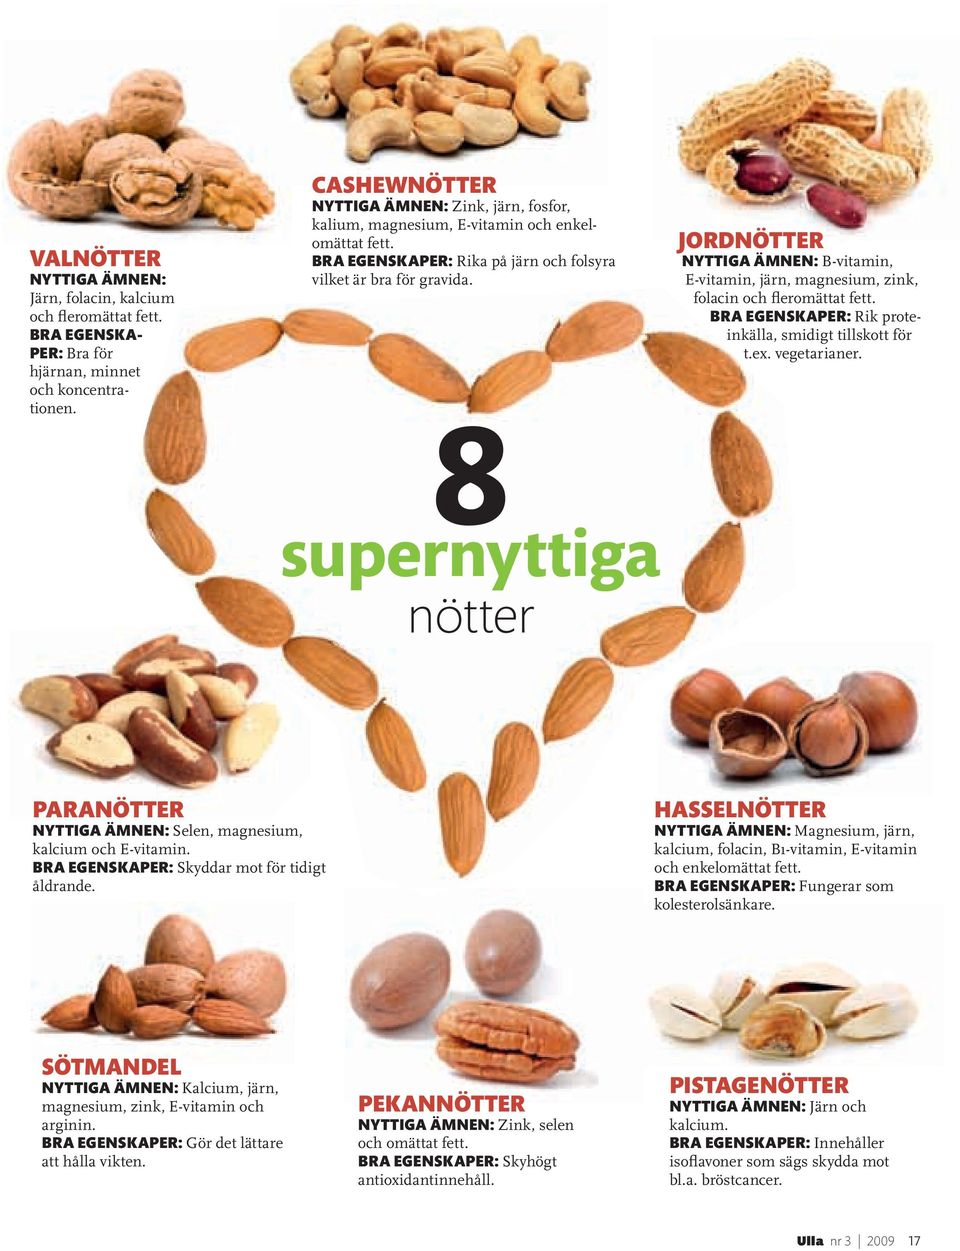 8 supernyttiga nötter JORDNÖTTER NYTTIGA ÄMNEN: B-vitamin, E-vitamin, järn, magnesium, zink, folacin och fleromättat fett. BRA EGENSKAPER: Rik proteinkälla, smidigt tillskott för t.ex. vegetarianer.